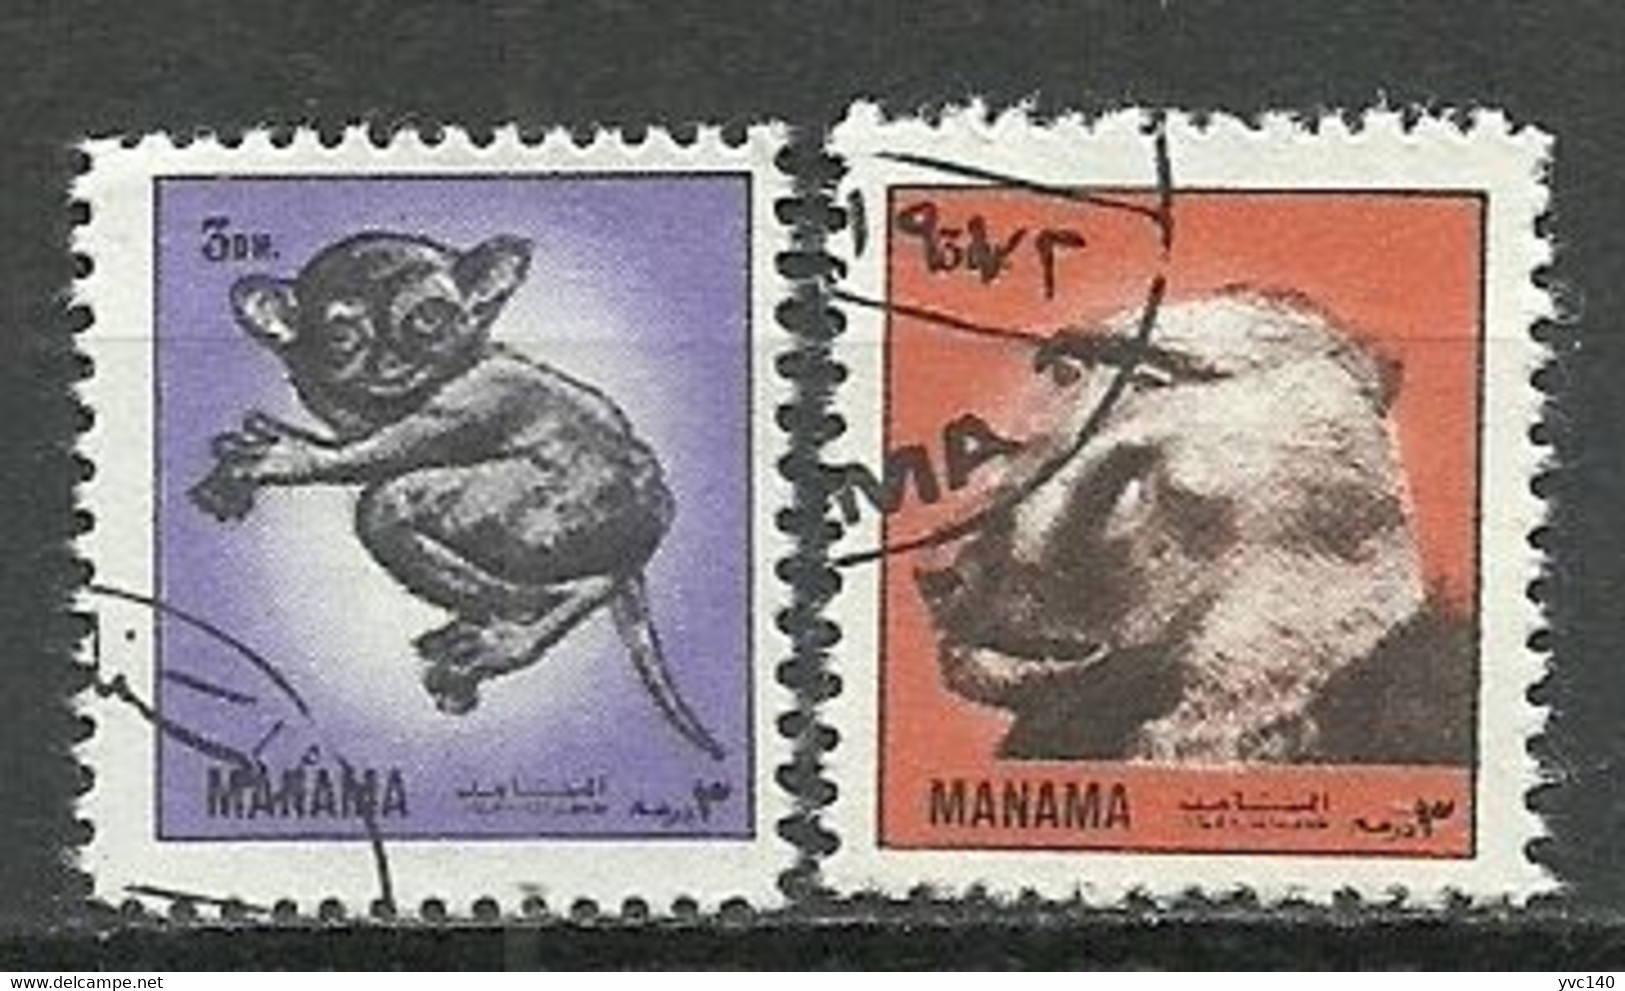 UAE (Manama); Animals - Manama